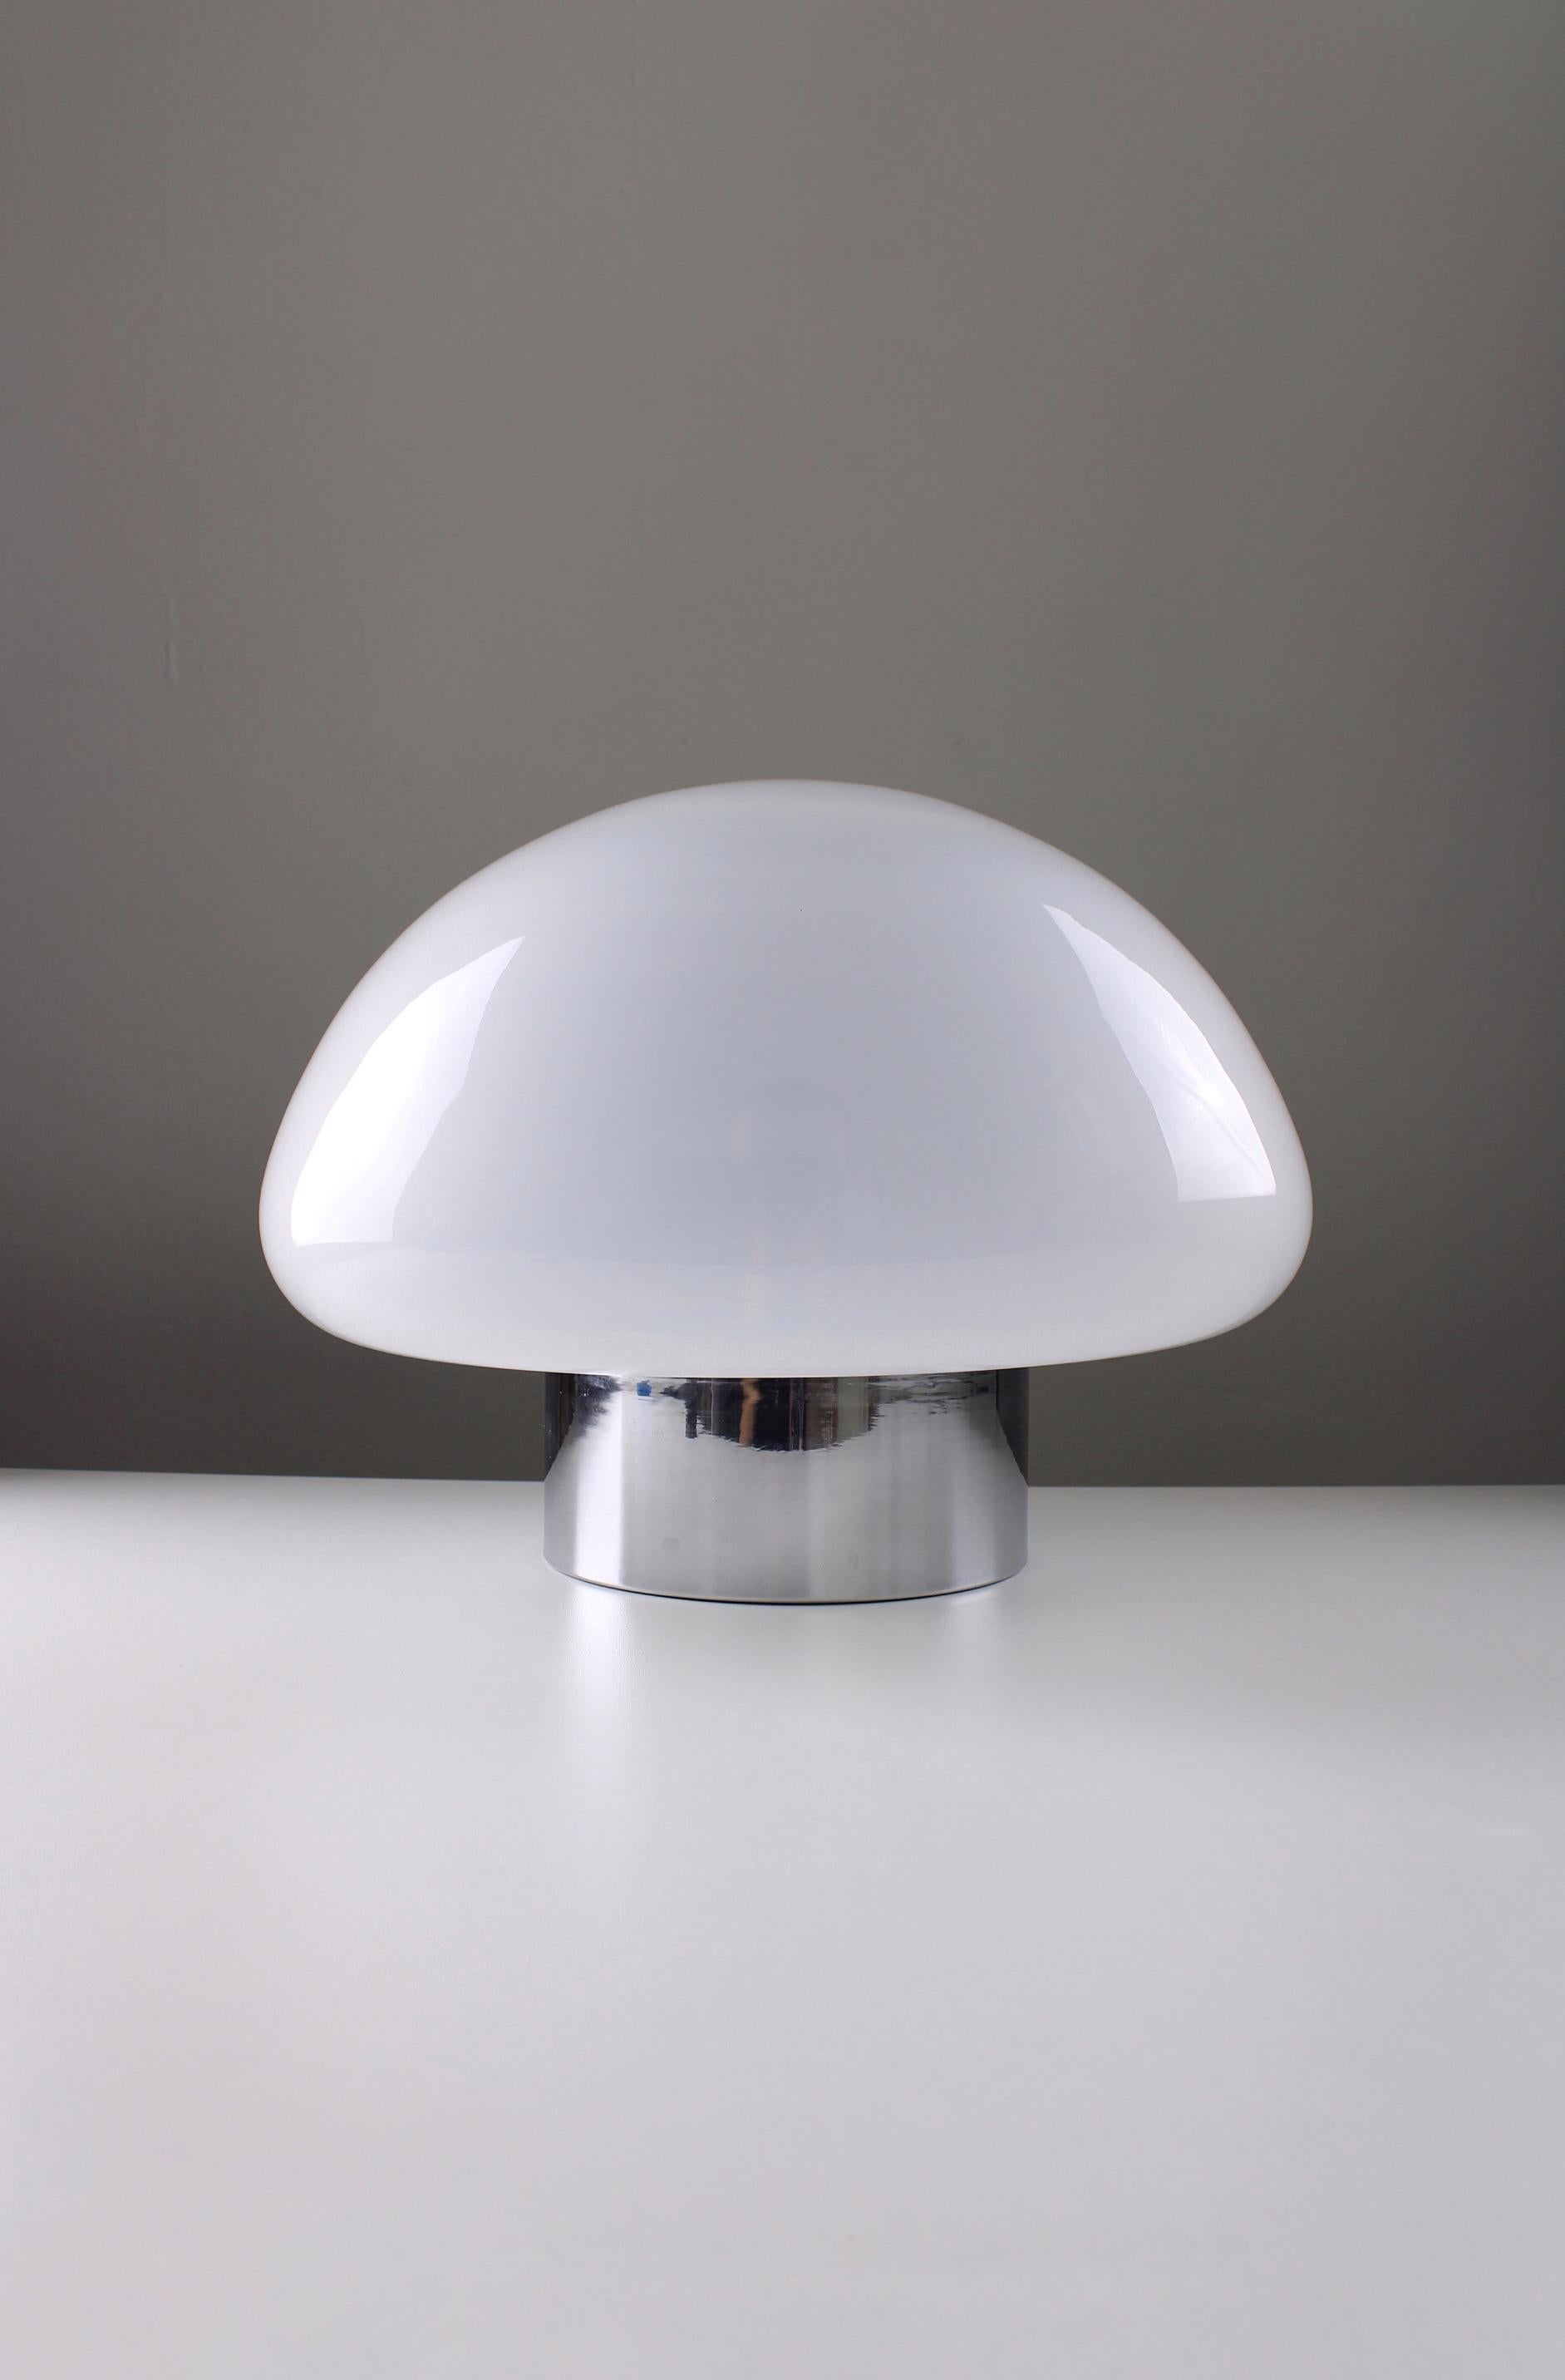 Rare lampe de table fabriquée par une petite et inconnue The Table Company Company Lamperti de Robbiate (Como). Cette lampe a été produite vers 1976. Design/One simple avec métal chromé et grand abat-jour en verre doux. Sur le dessous se trouve un